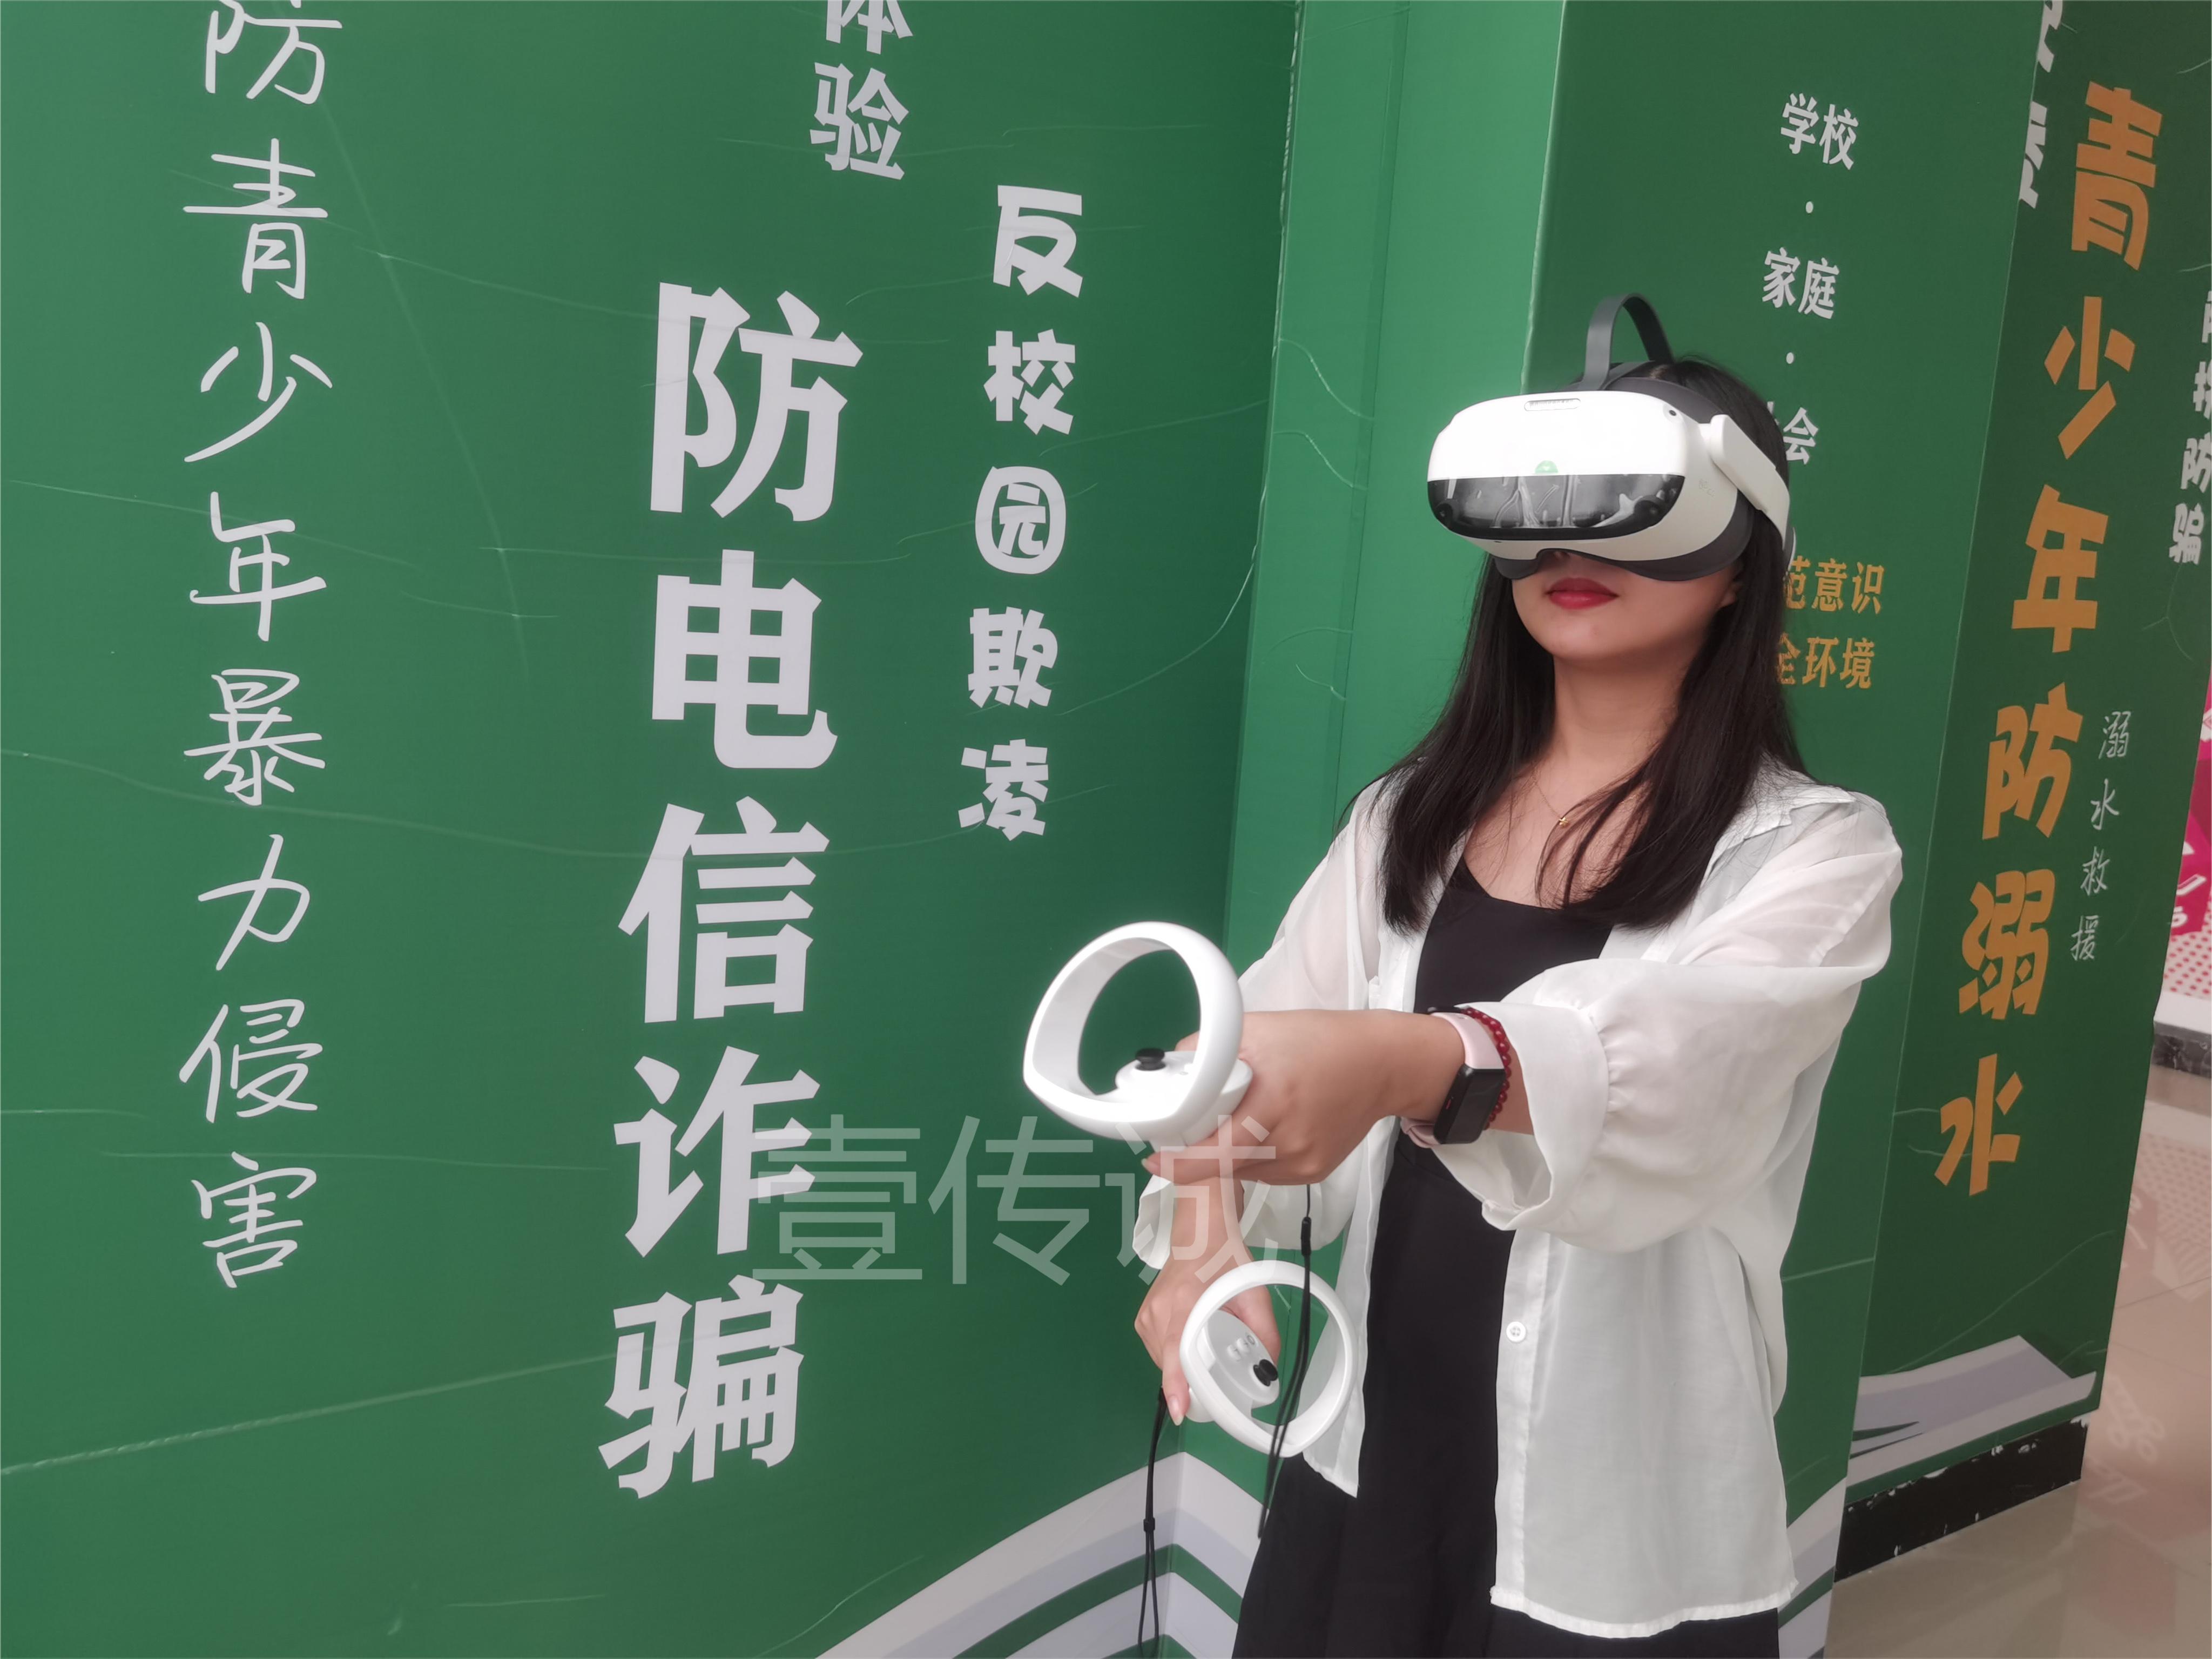 壹传诚VR防欺诈系统